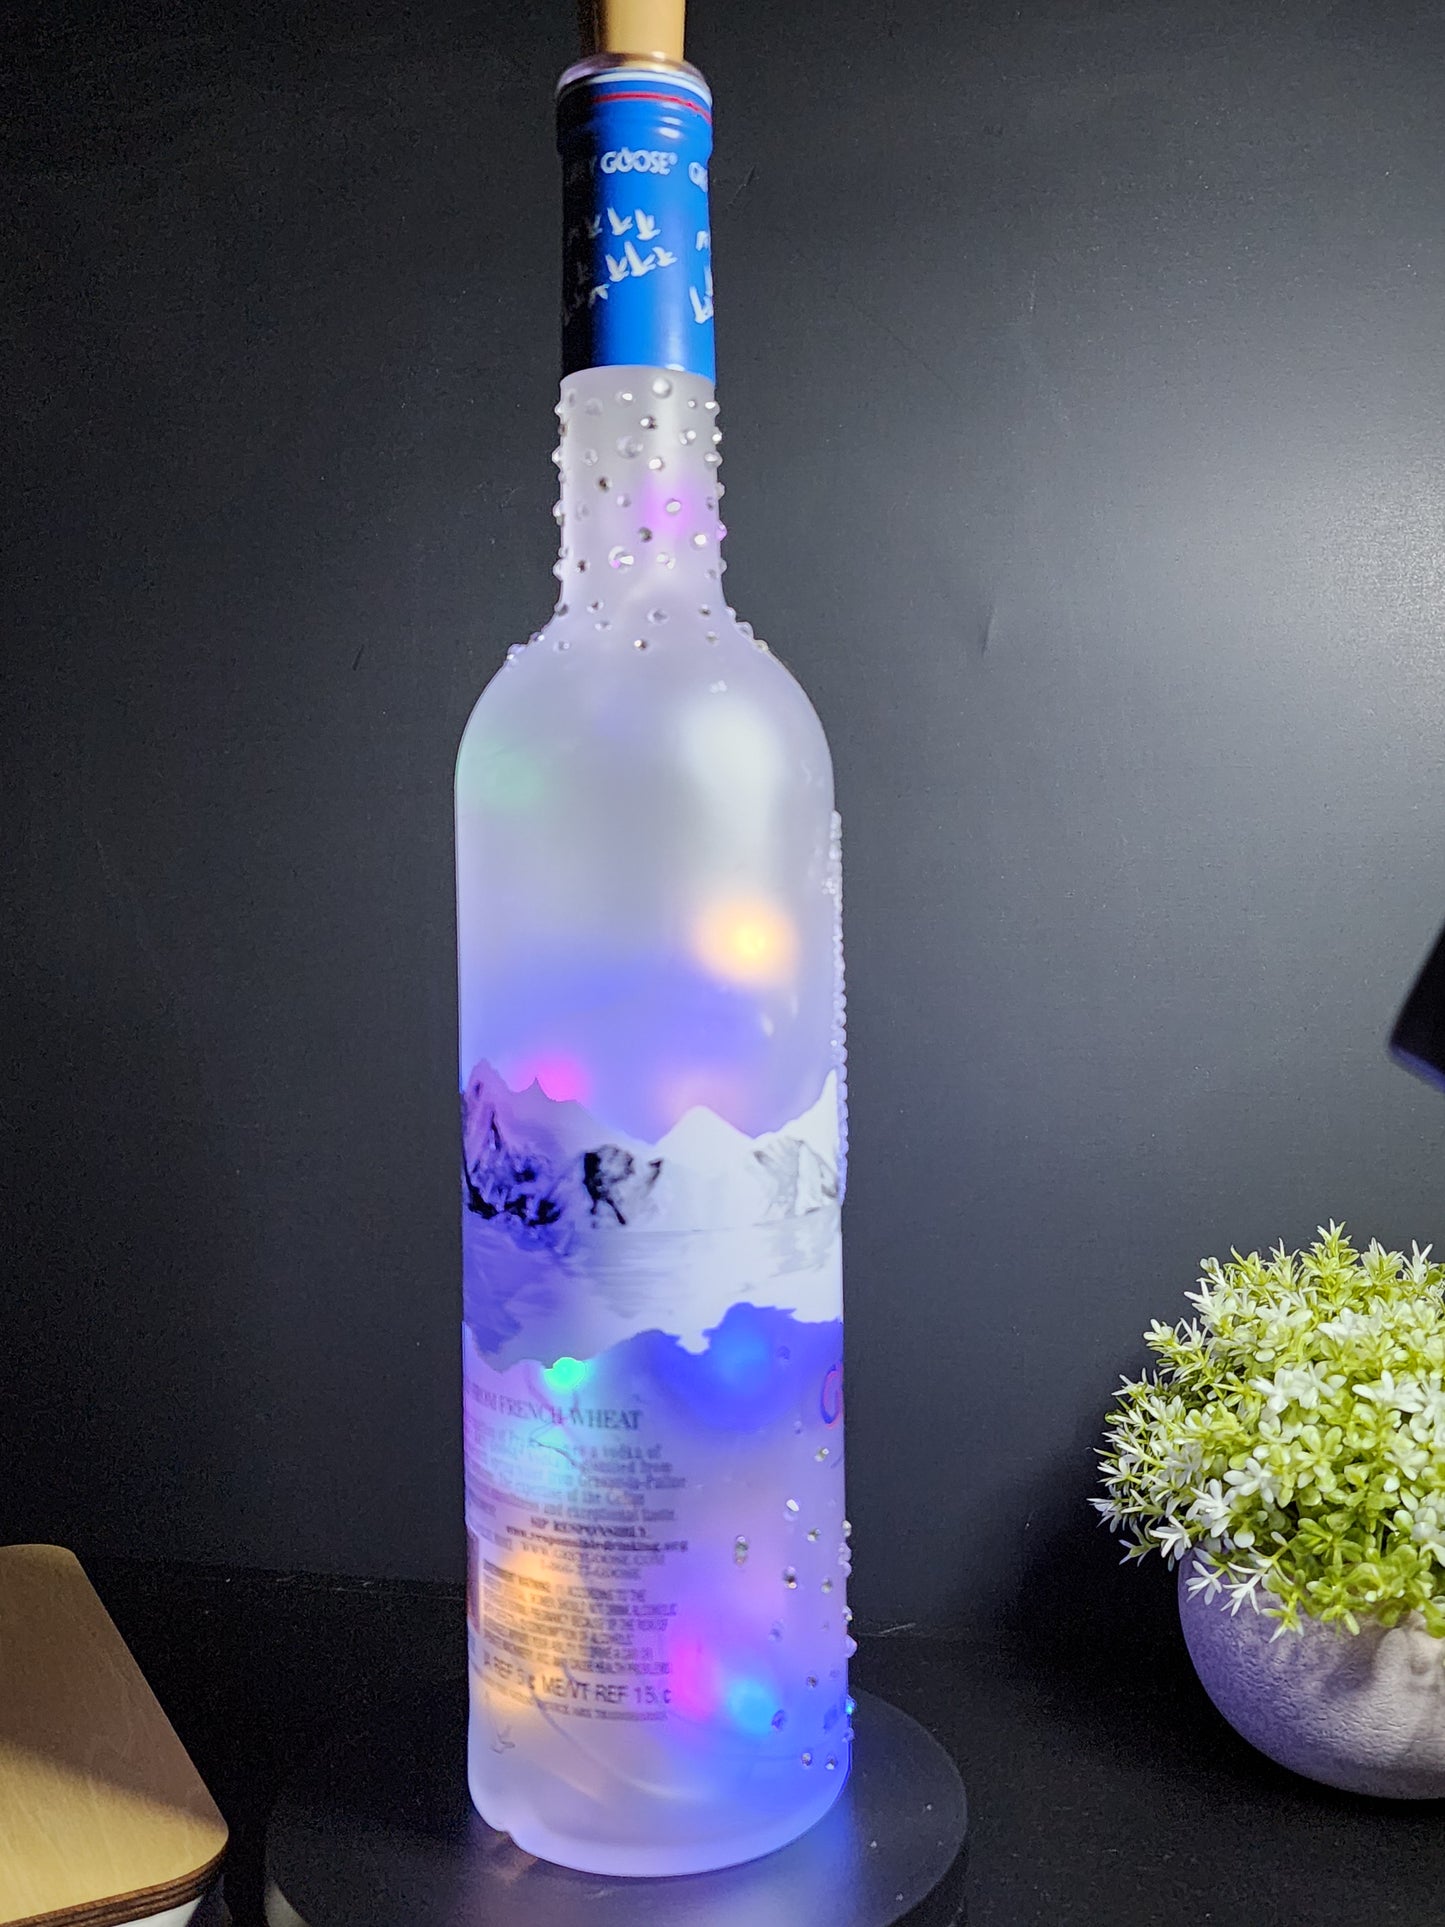 Grey Goose Vodka LED Liquor Bottle Light